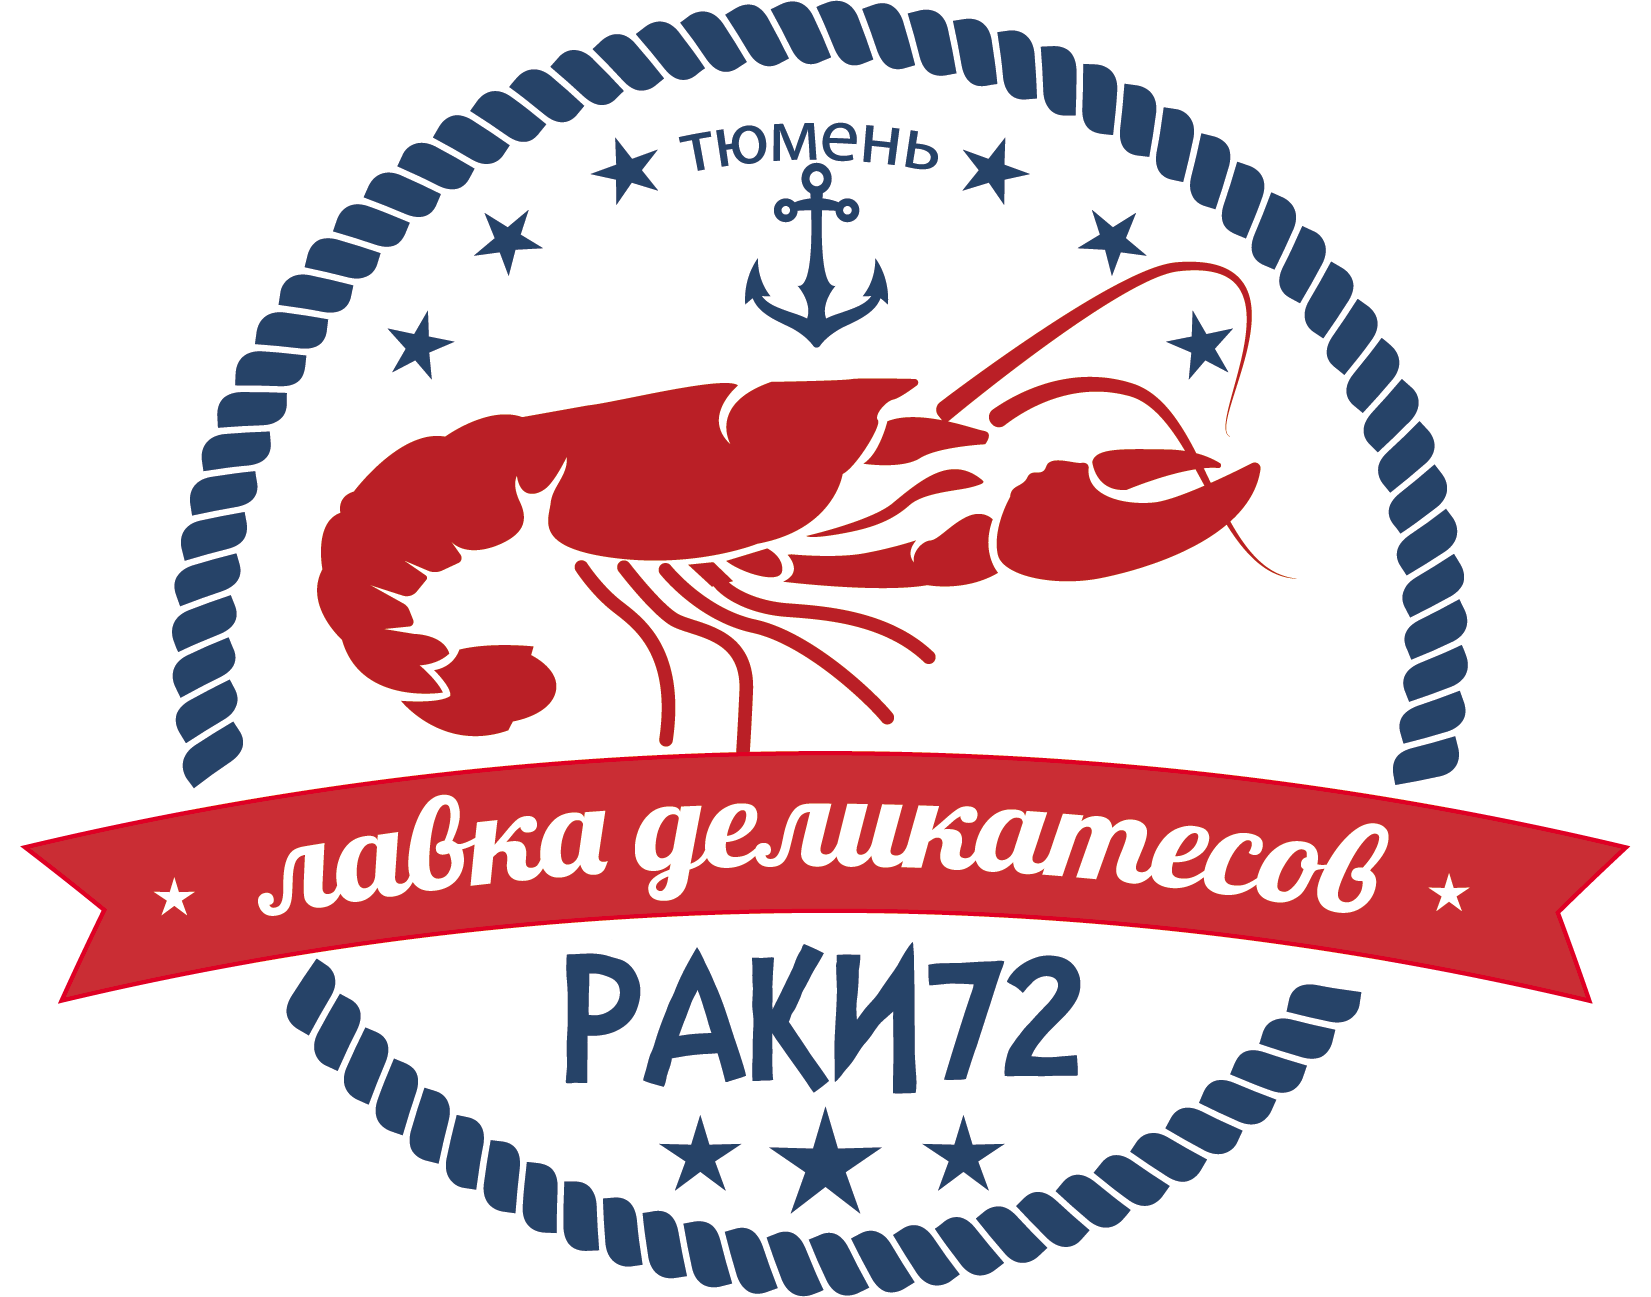 Раки72-логотип